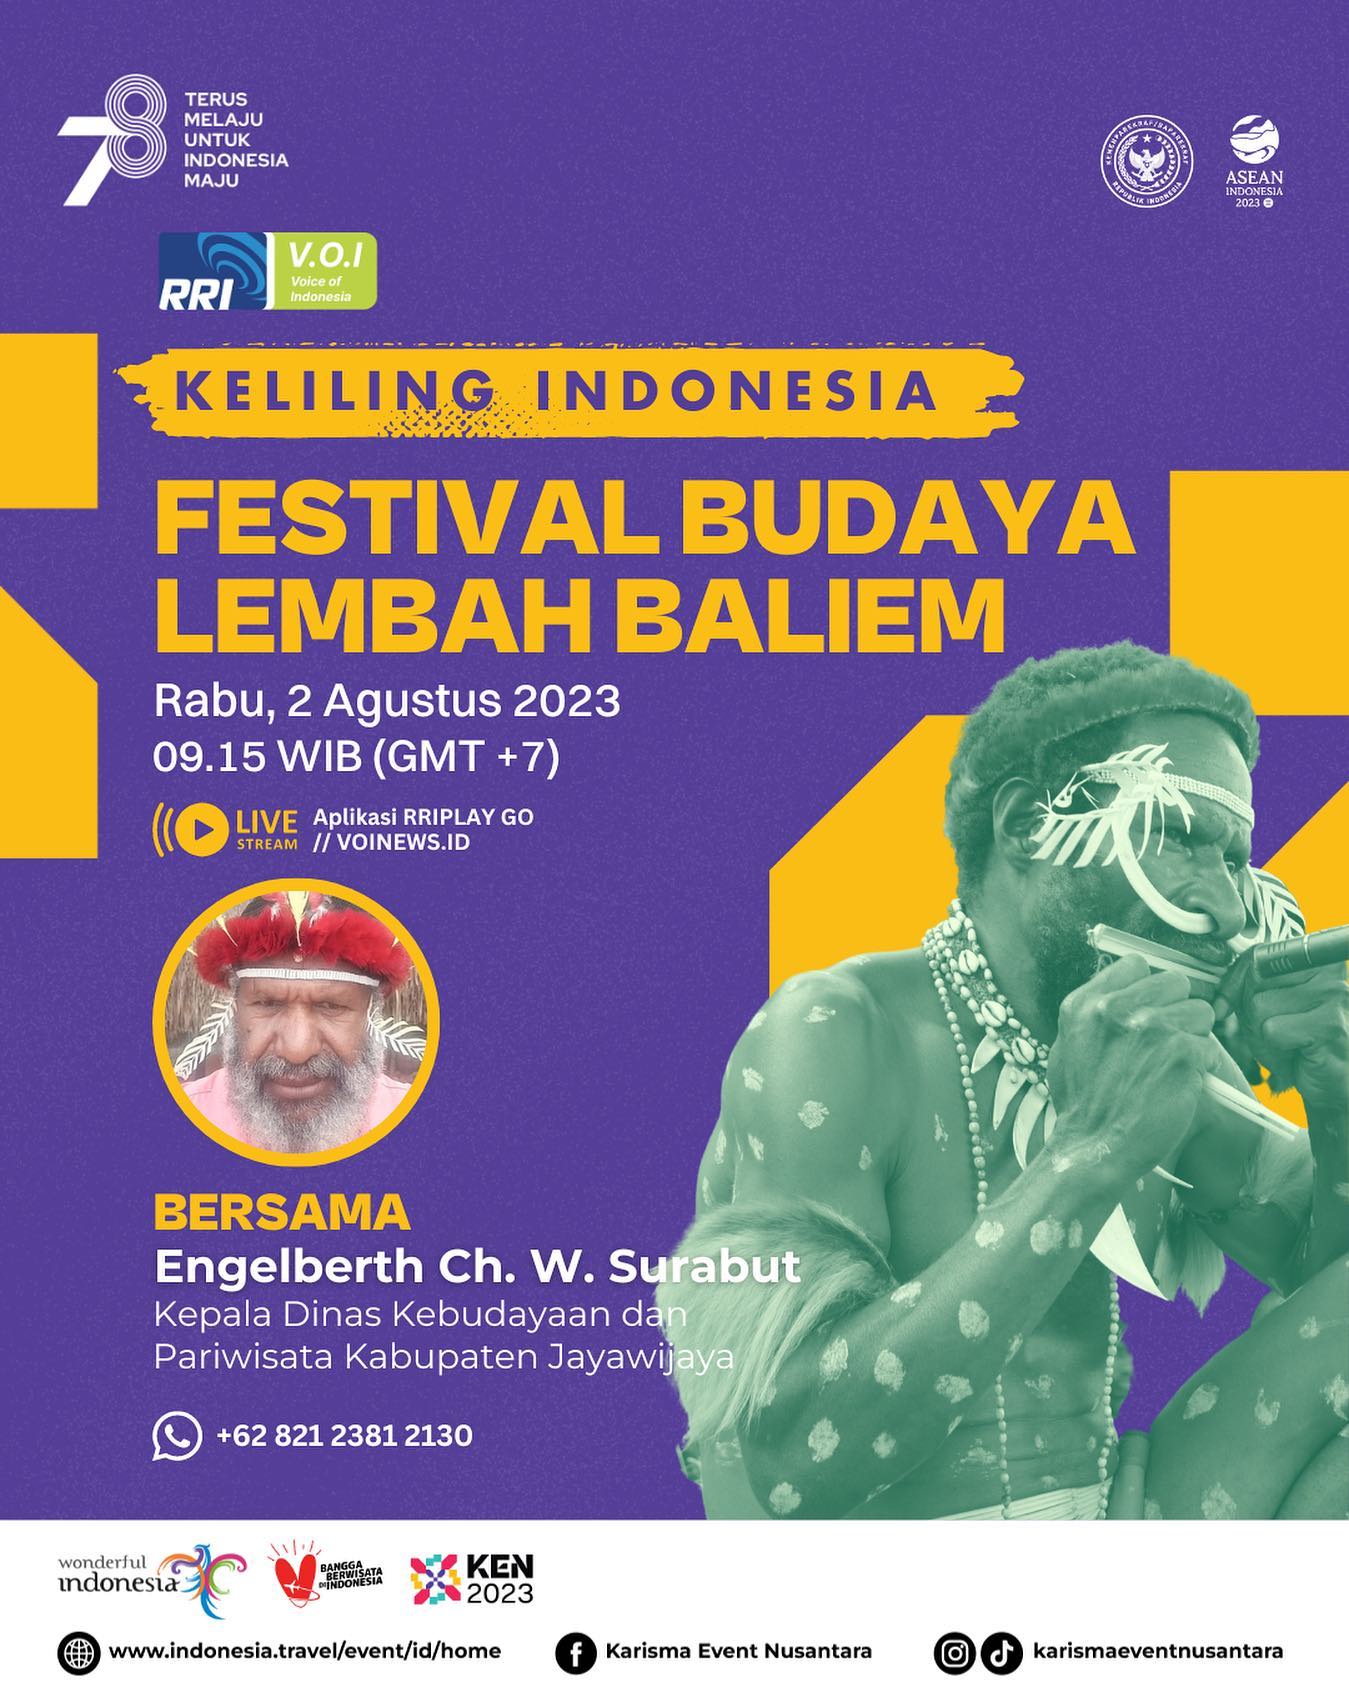 RRI Hadirkan “Voice of Indonesia vol.1”: Festival Budaya Lembah Baliem di Jayawijaya